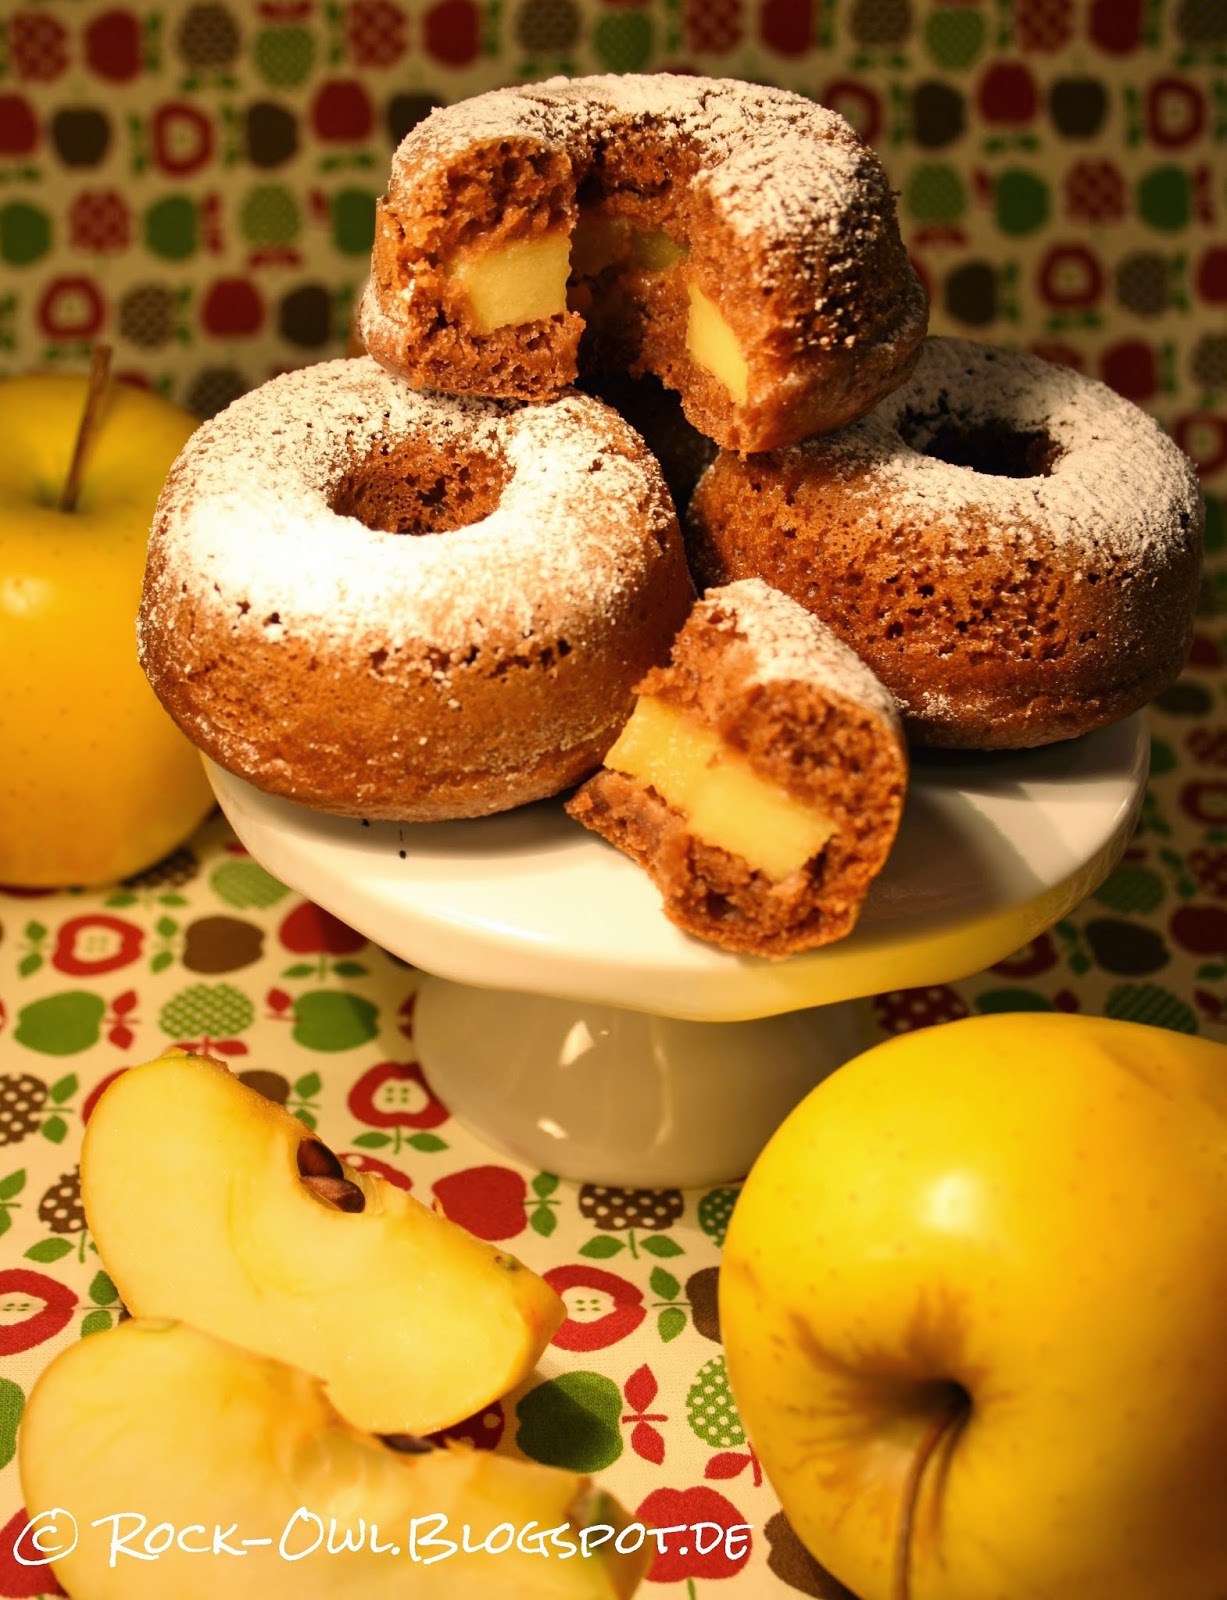 Rock and Owl Blog: Die haben&amp;#39;s in sich: Donuts mit Apfel-Füllung ♥